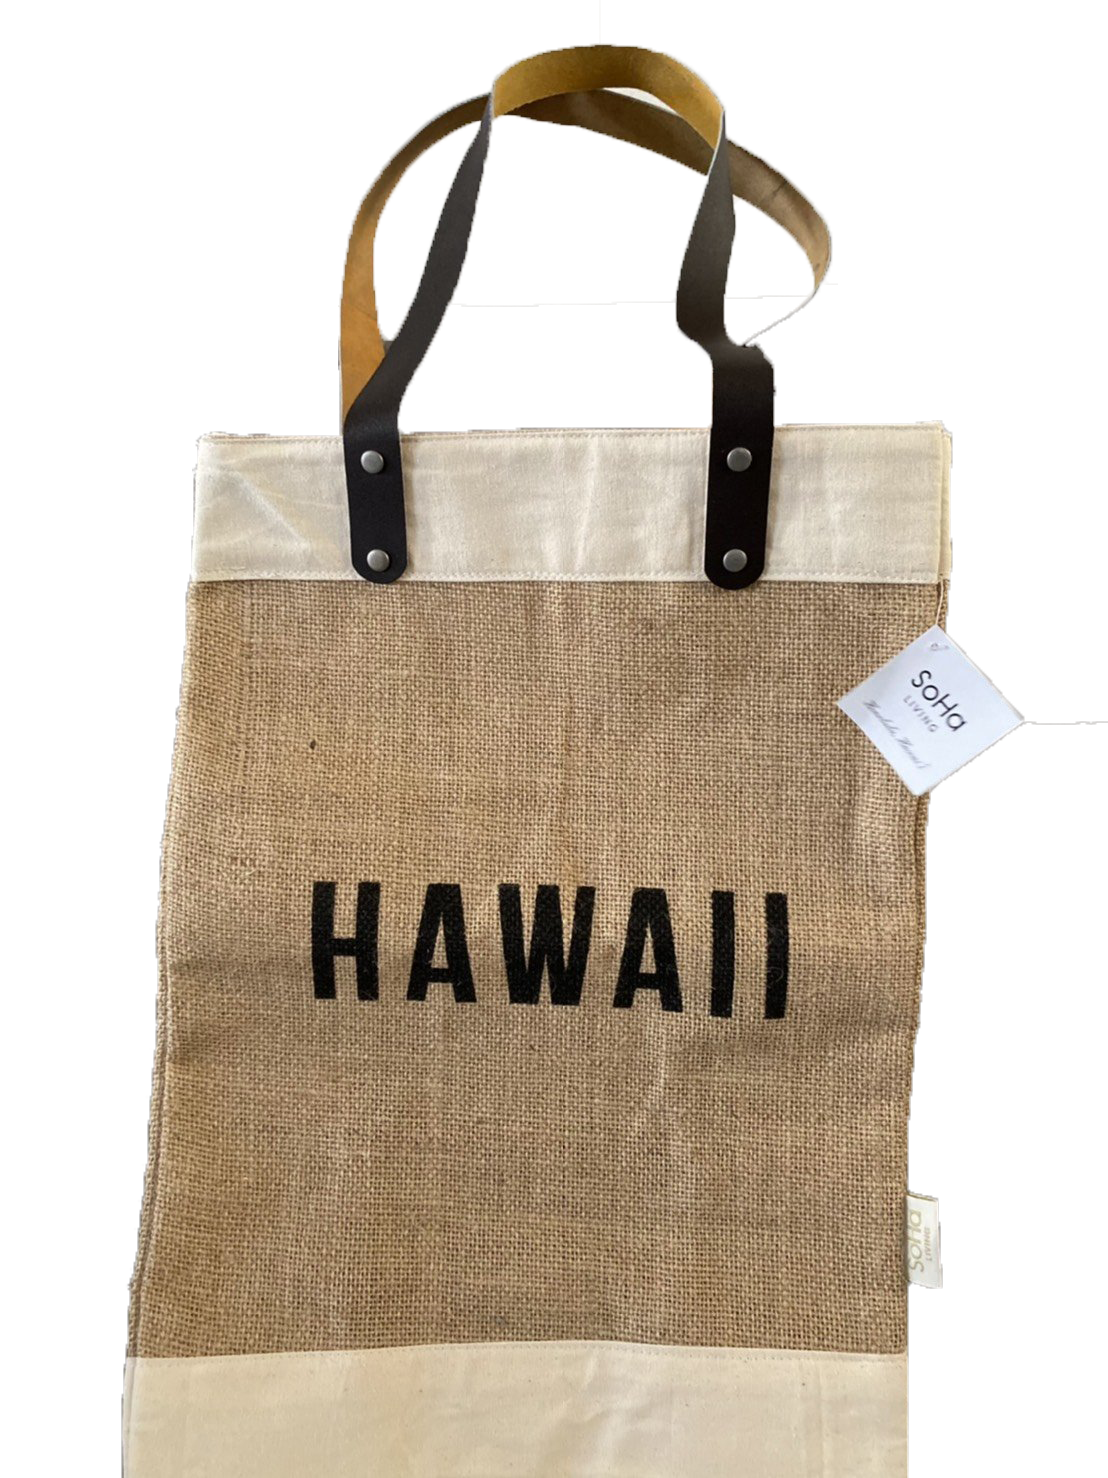 SoHa LIVING 日本未上陸のハワイ人気店 マーケットバッグ HAWAII 大